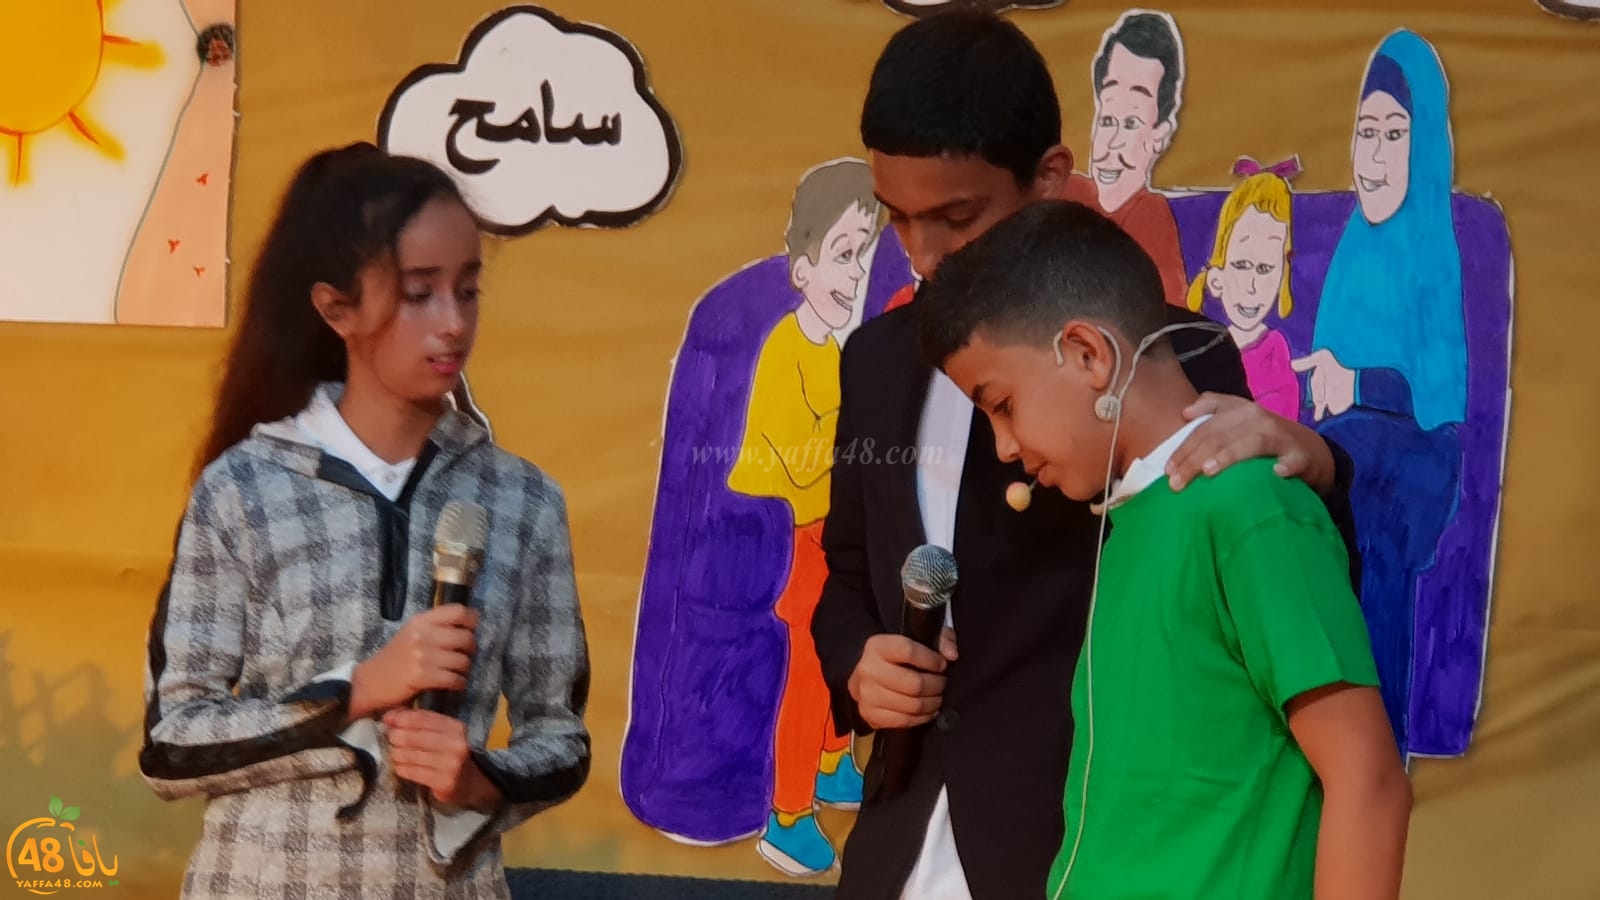 فيديو: مدرسة الزهراء الابتدائية باللد تحتفل بتخريج فوج جديد من طلابها